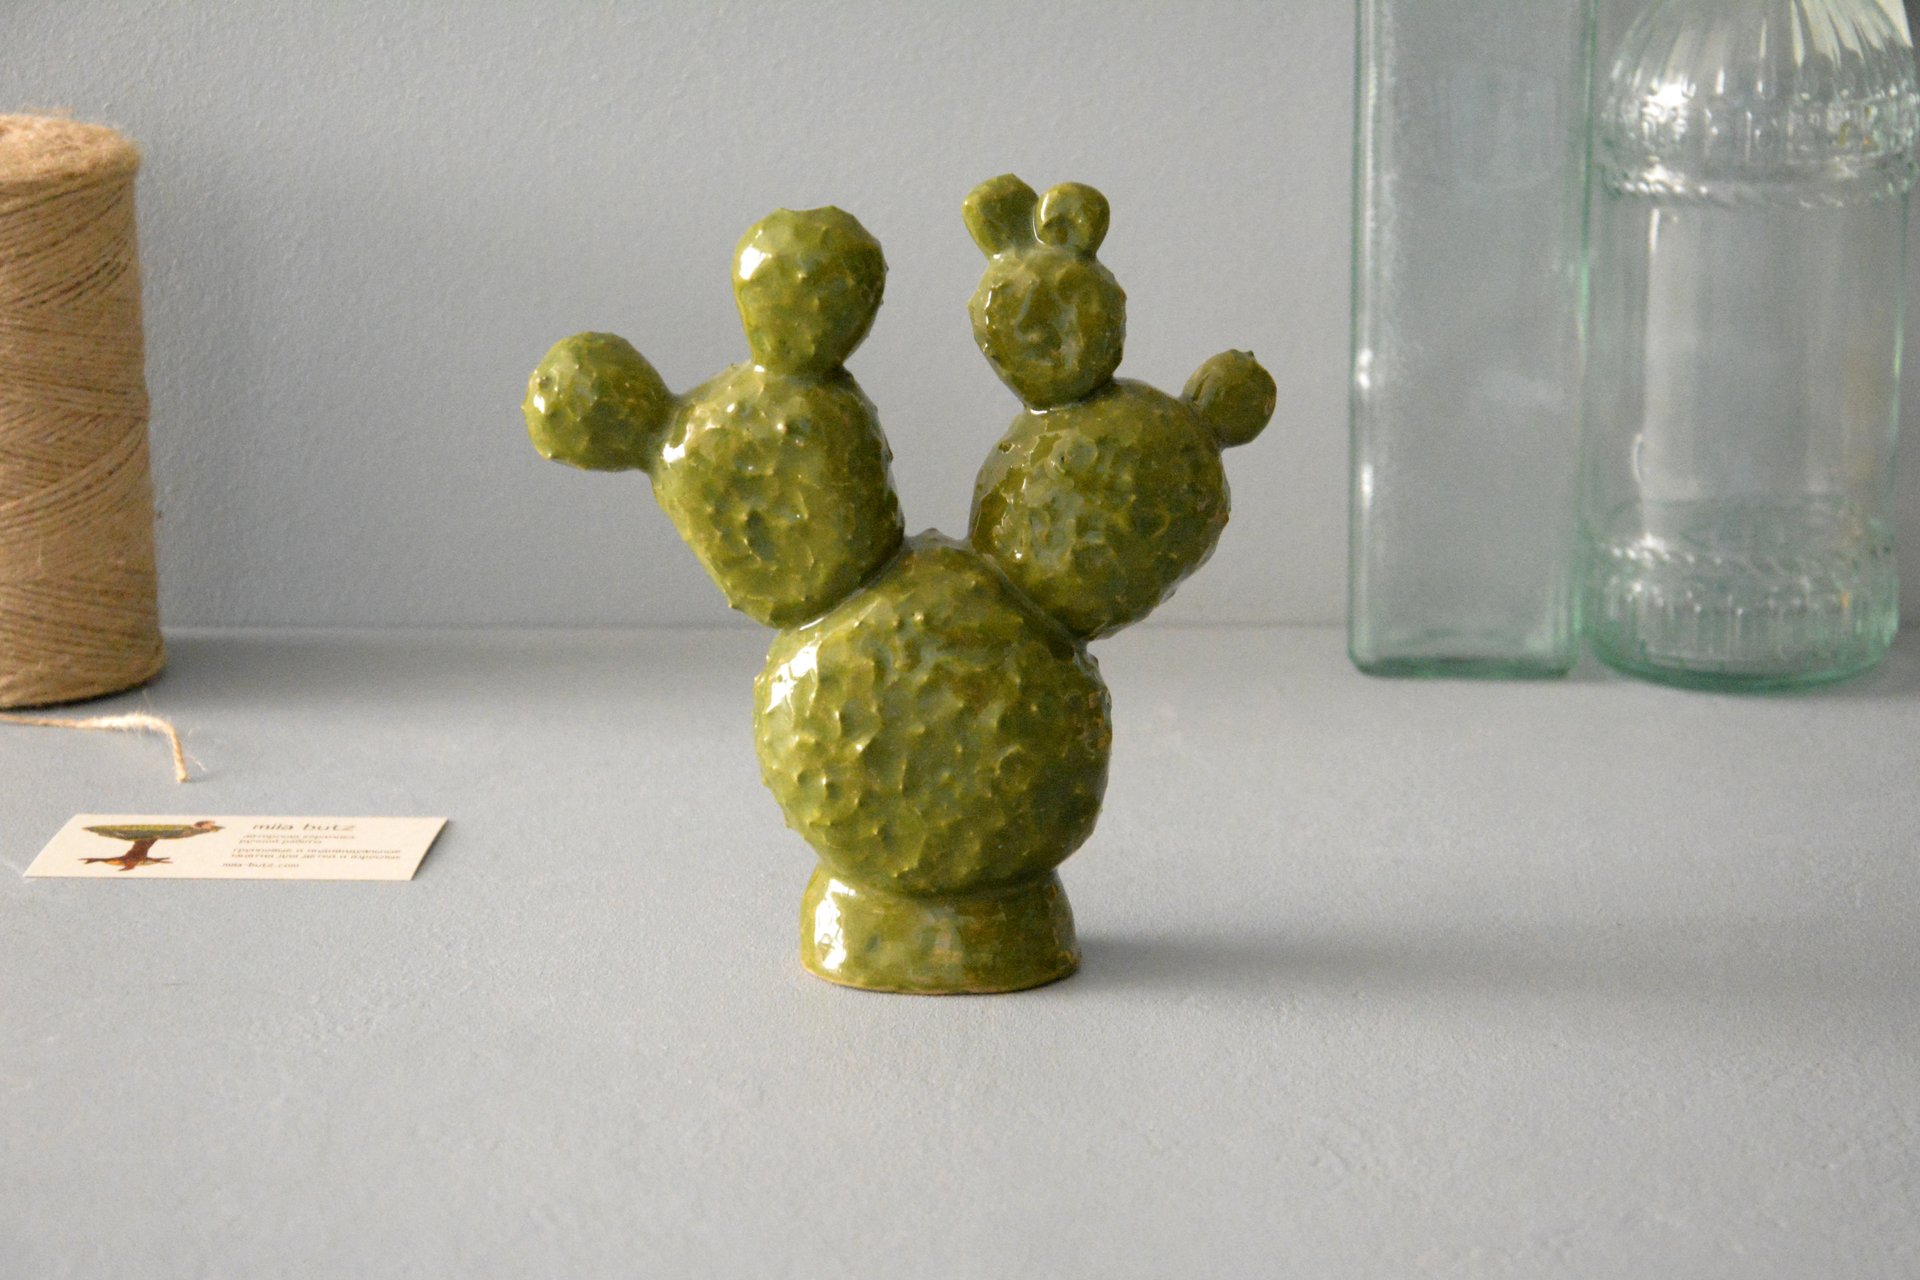 Cactus Opuntia - Cactus ceramic, height - 13 cm, photo 1 of 5.